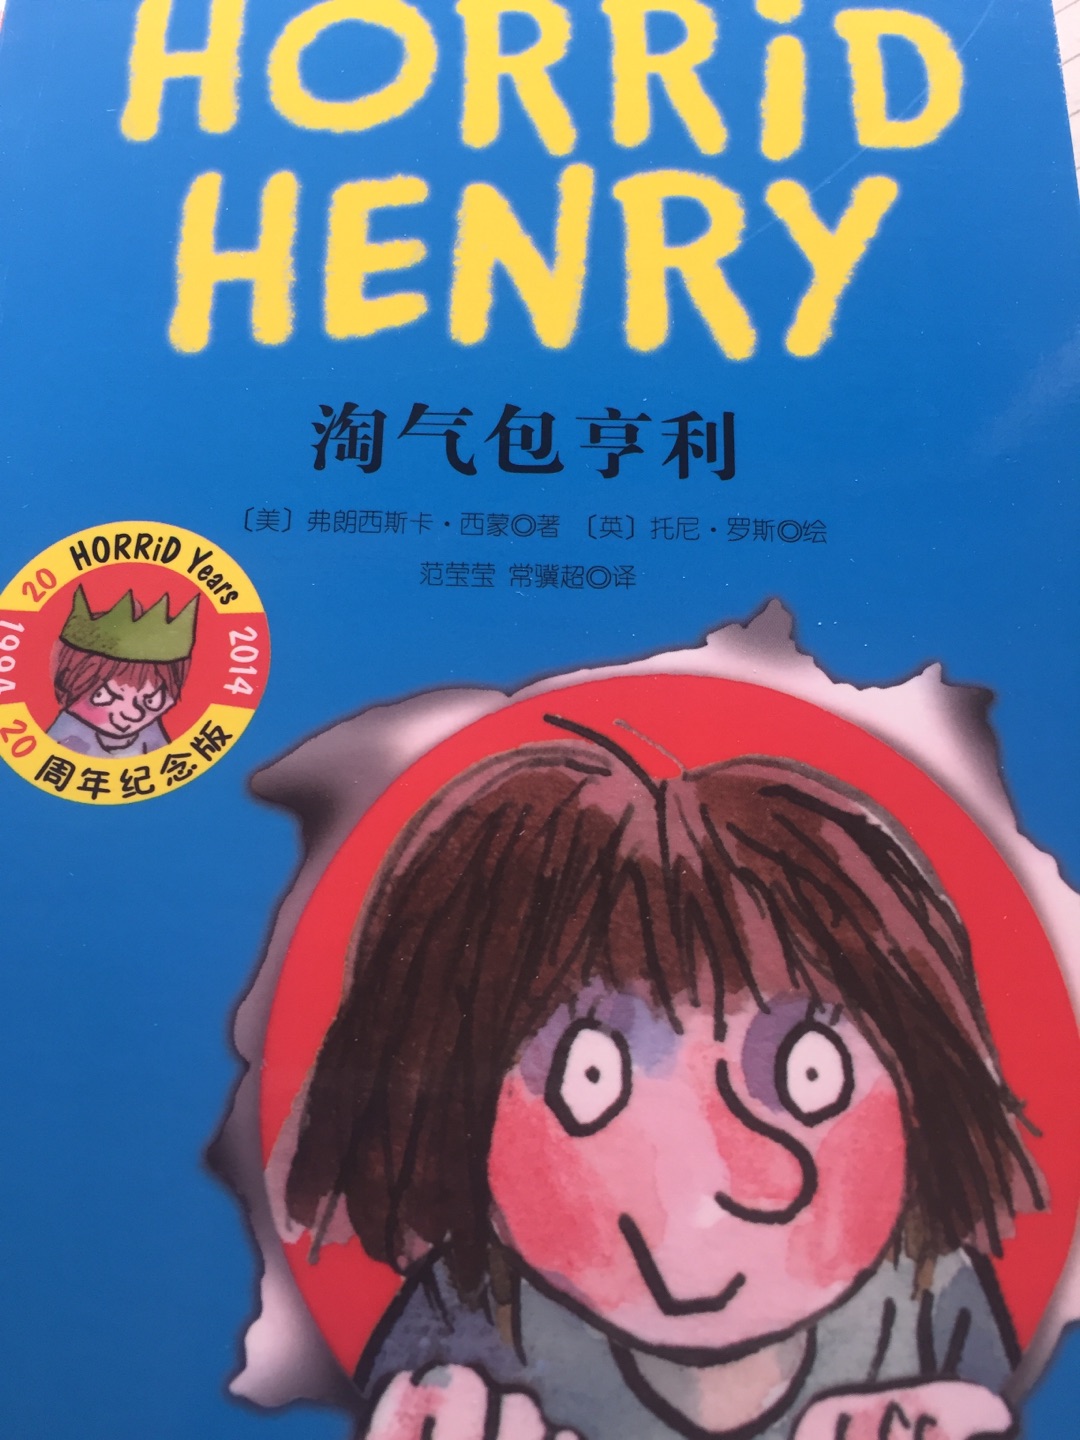 书的前半部分是中文，后半部分是英文，质量不错，价格实惠。